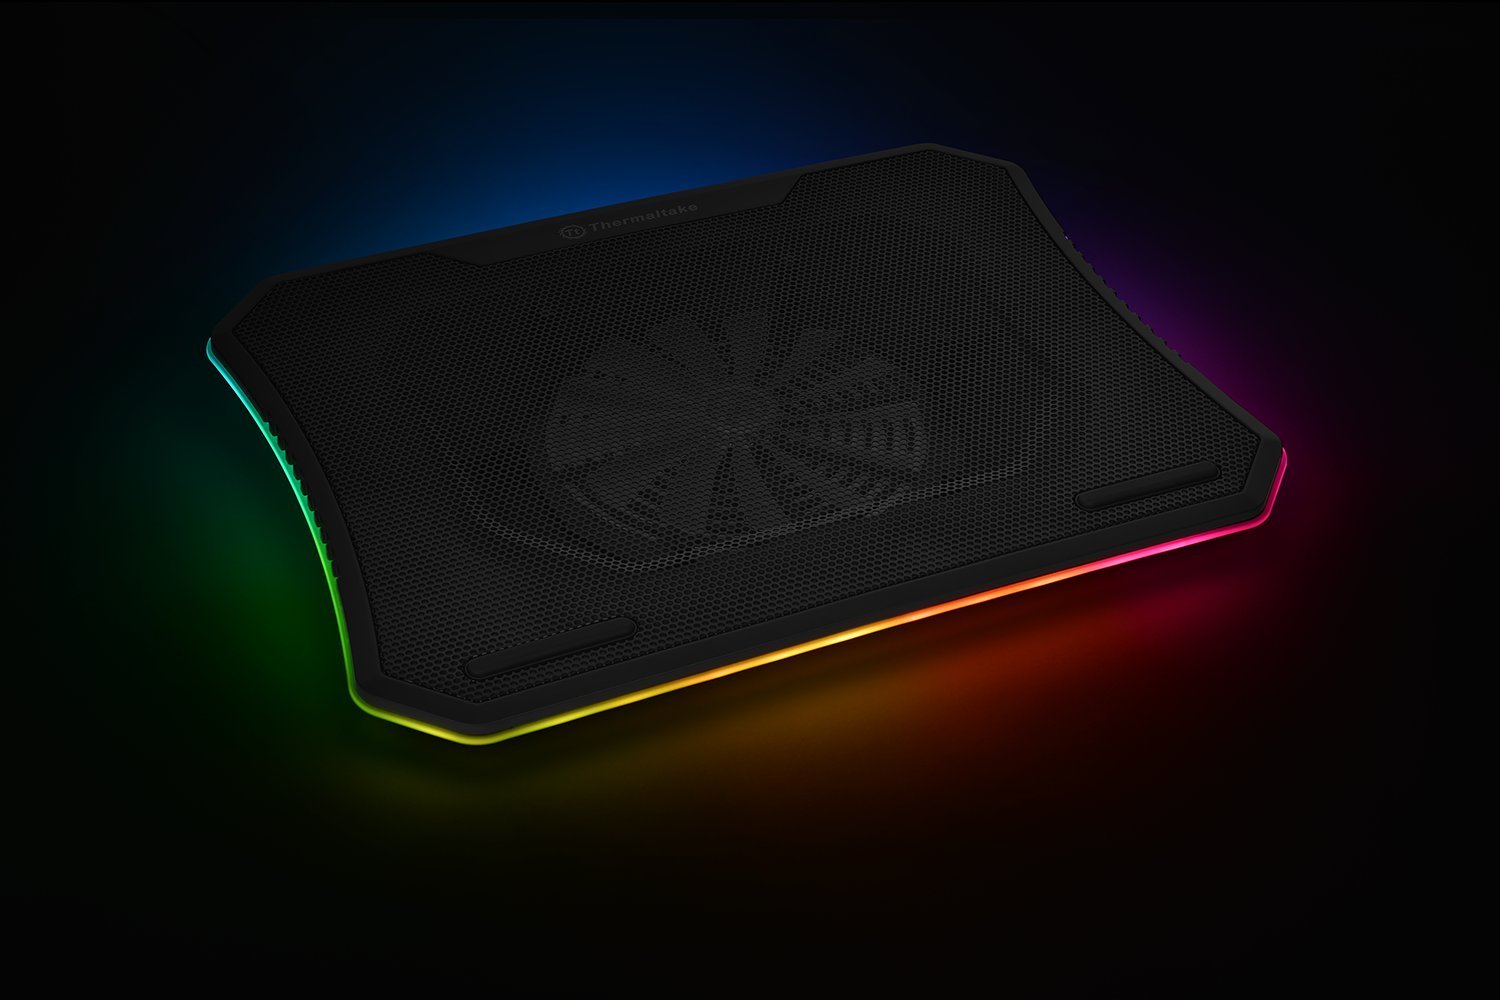 Thermaltake laptop cooling pad with RGB lighting around it.